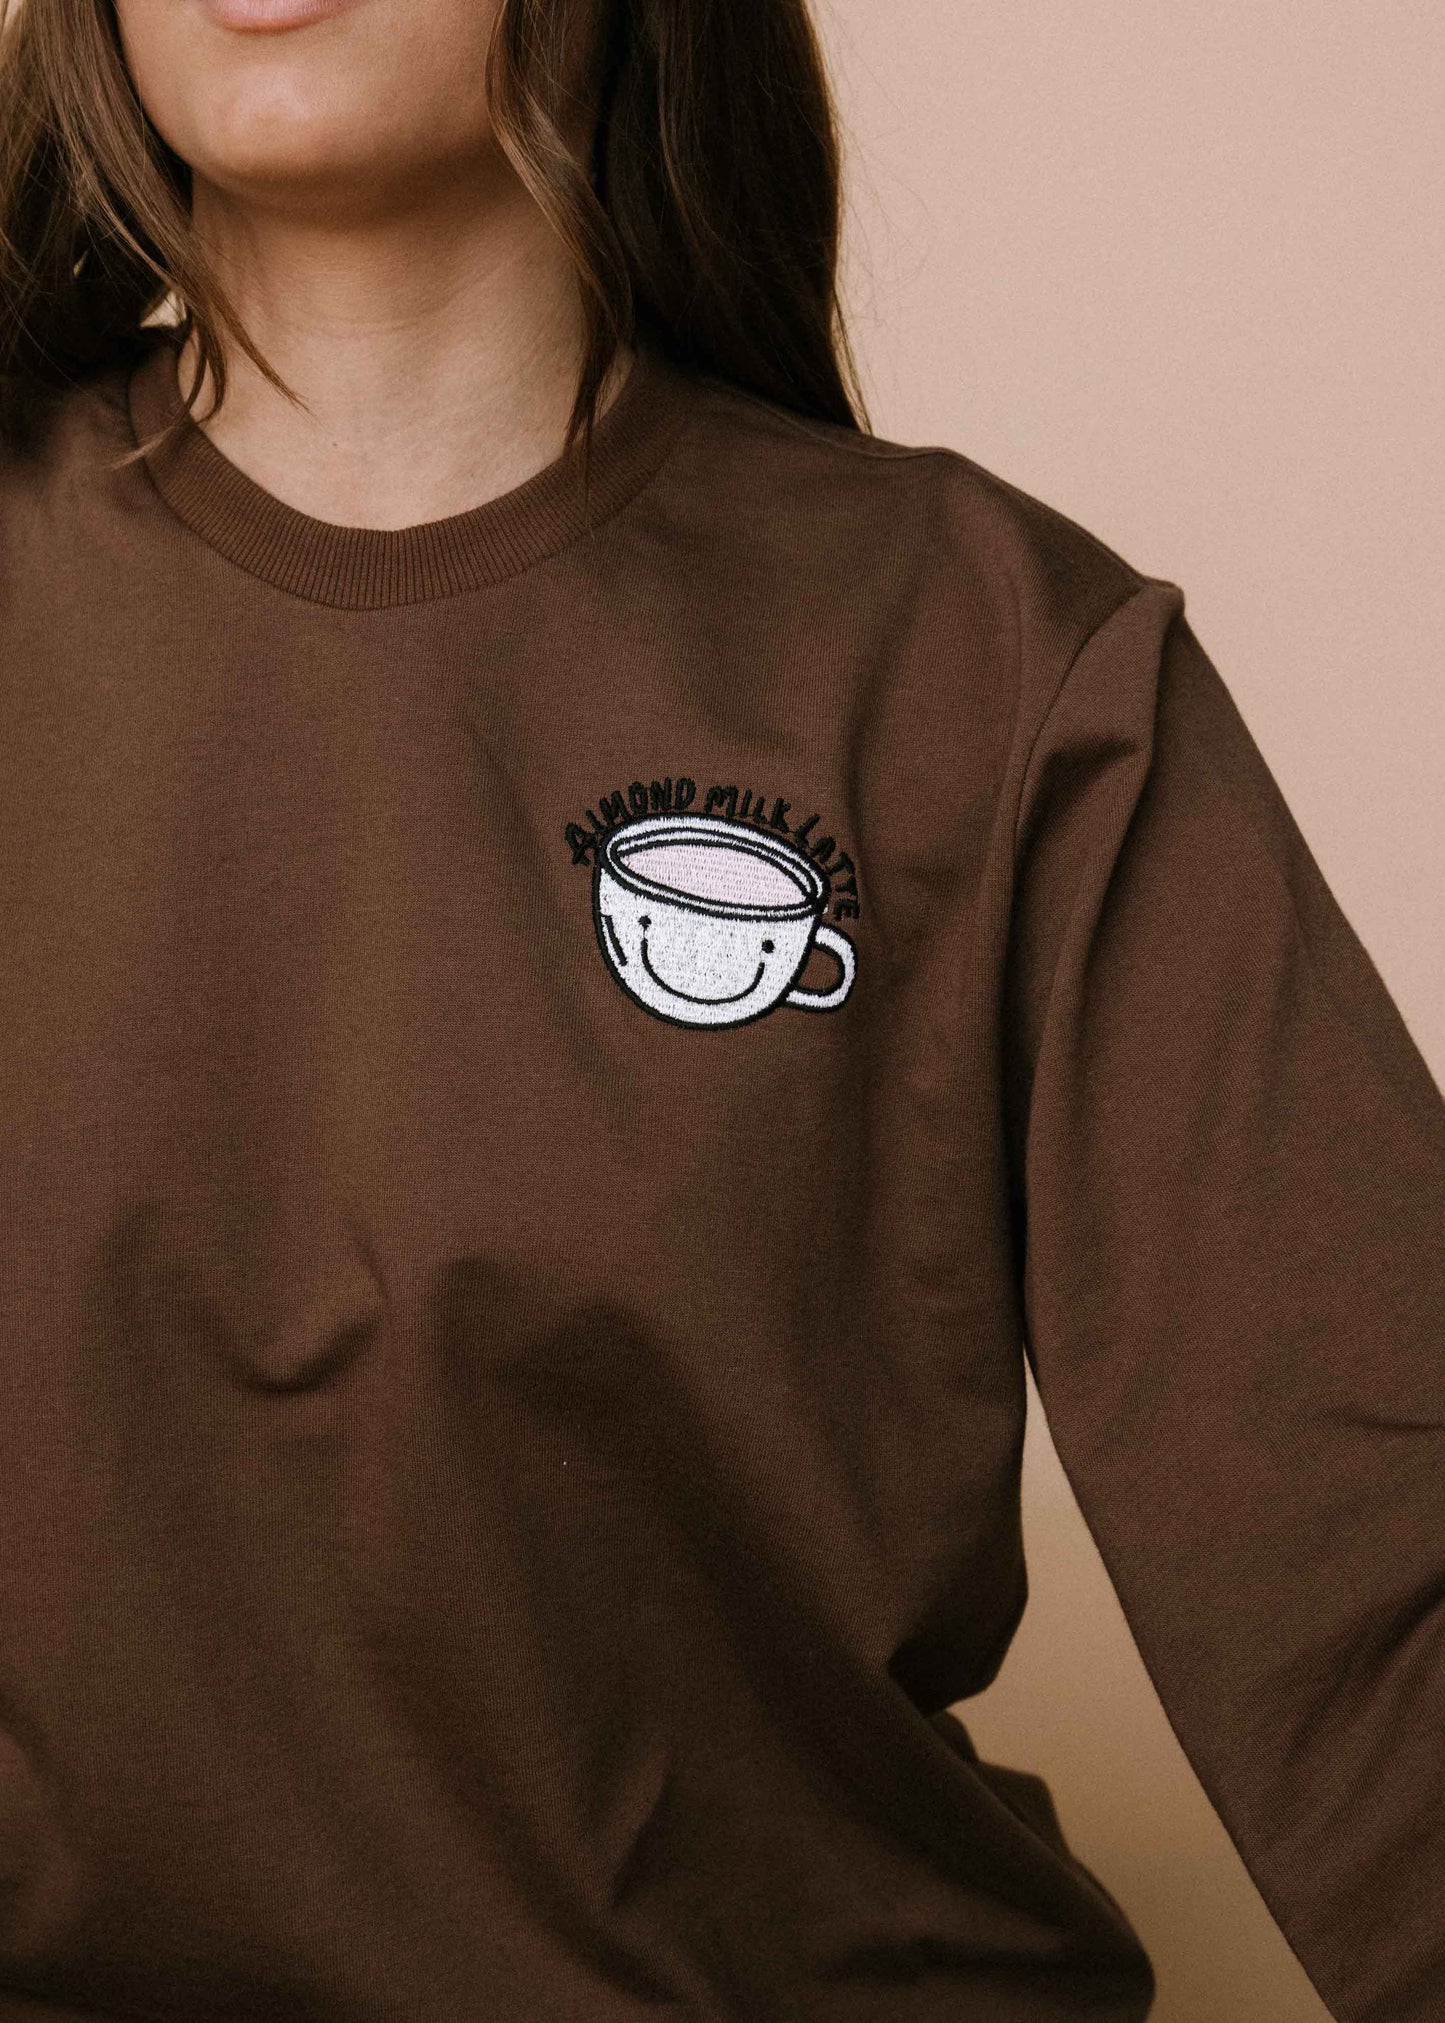 Almond milk latte sweater - chocolate - SALE